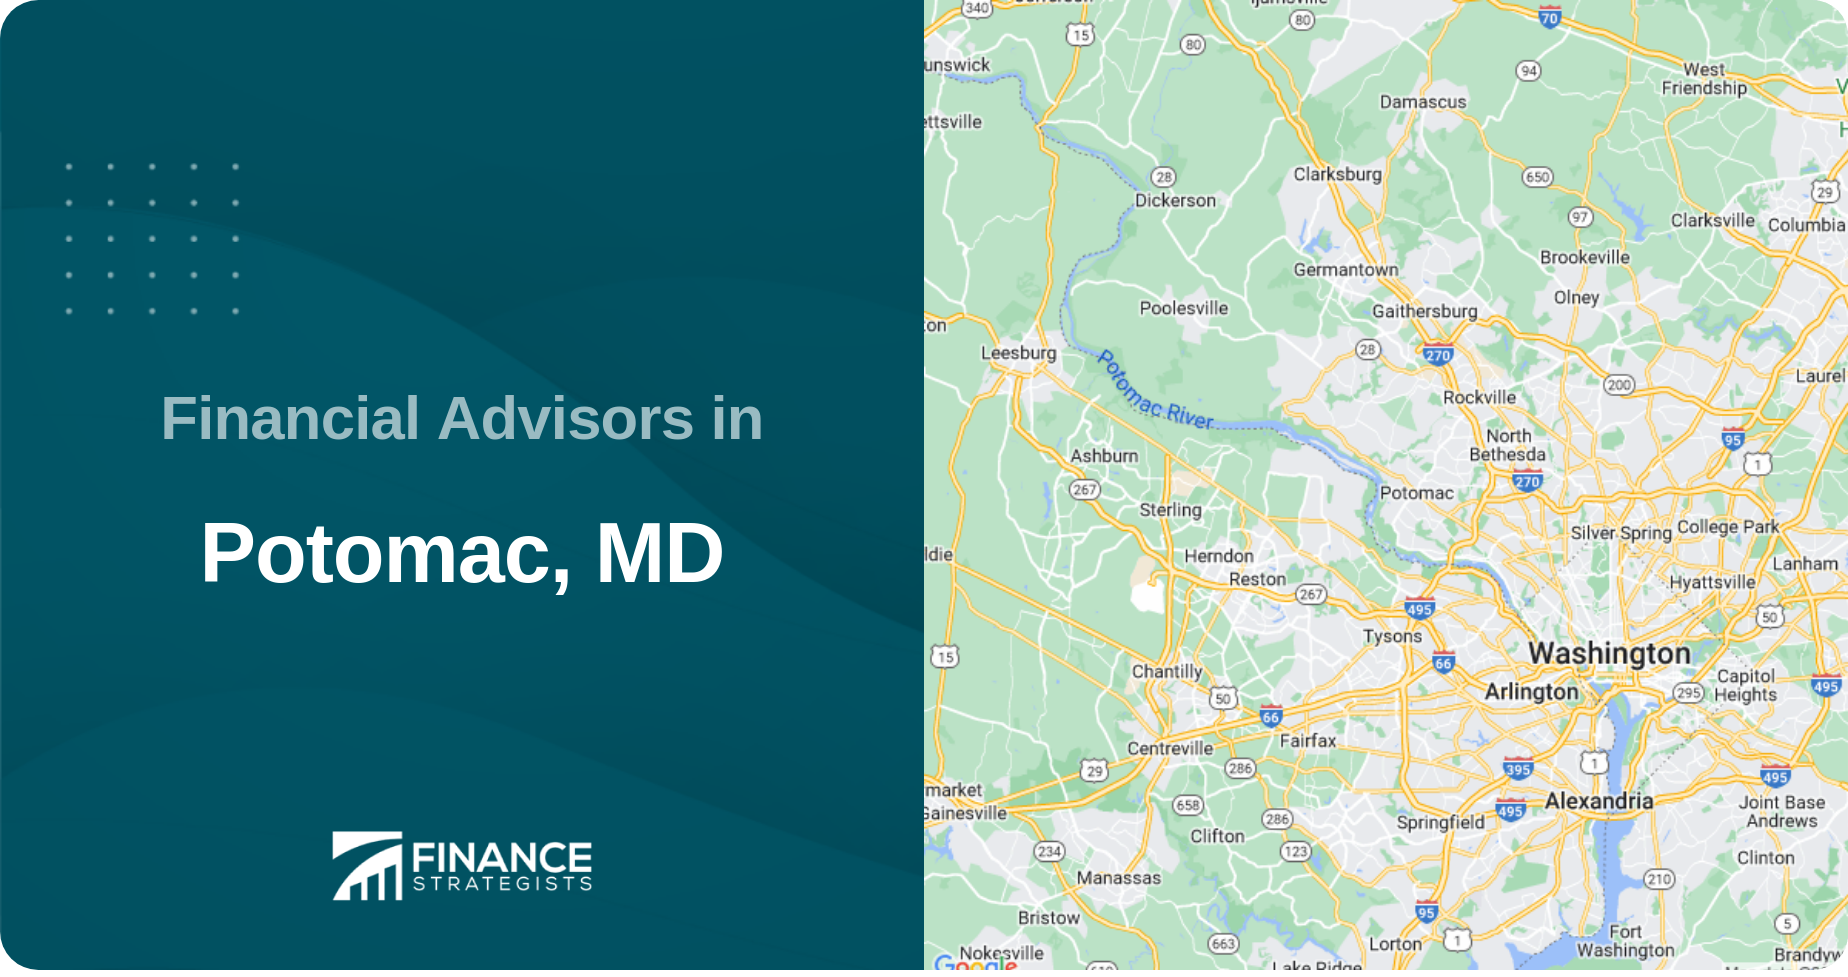 Financial Advisors in Potomac, MD